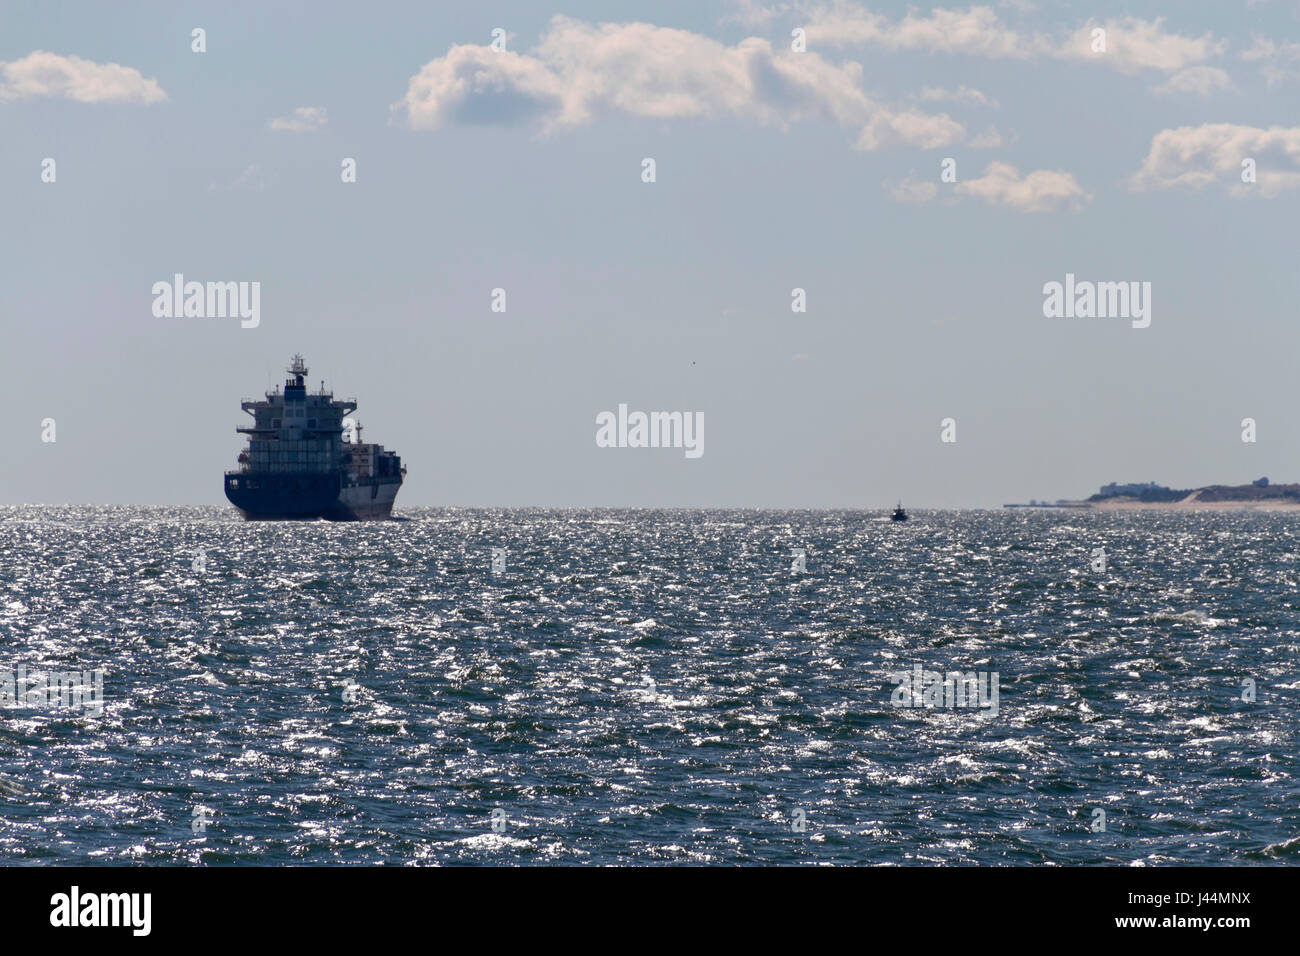 Ein großes Schiff erfüllt eine kleine Tug Boat auf der Chesapeake Bay ohr Land an einem sonnigen Tag Stockfoto